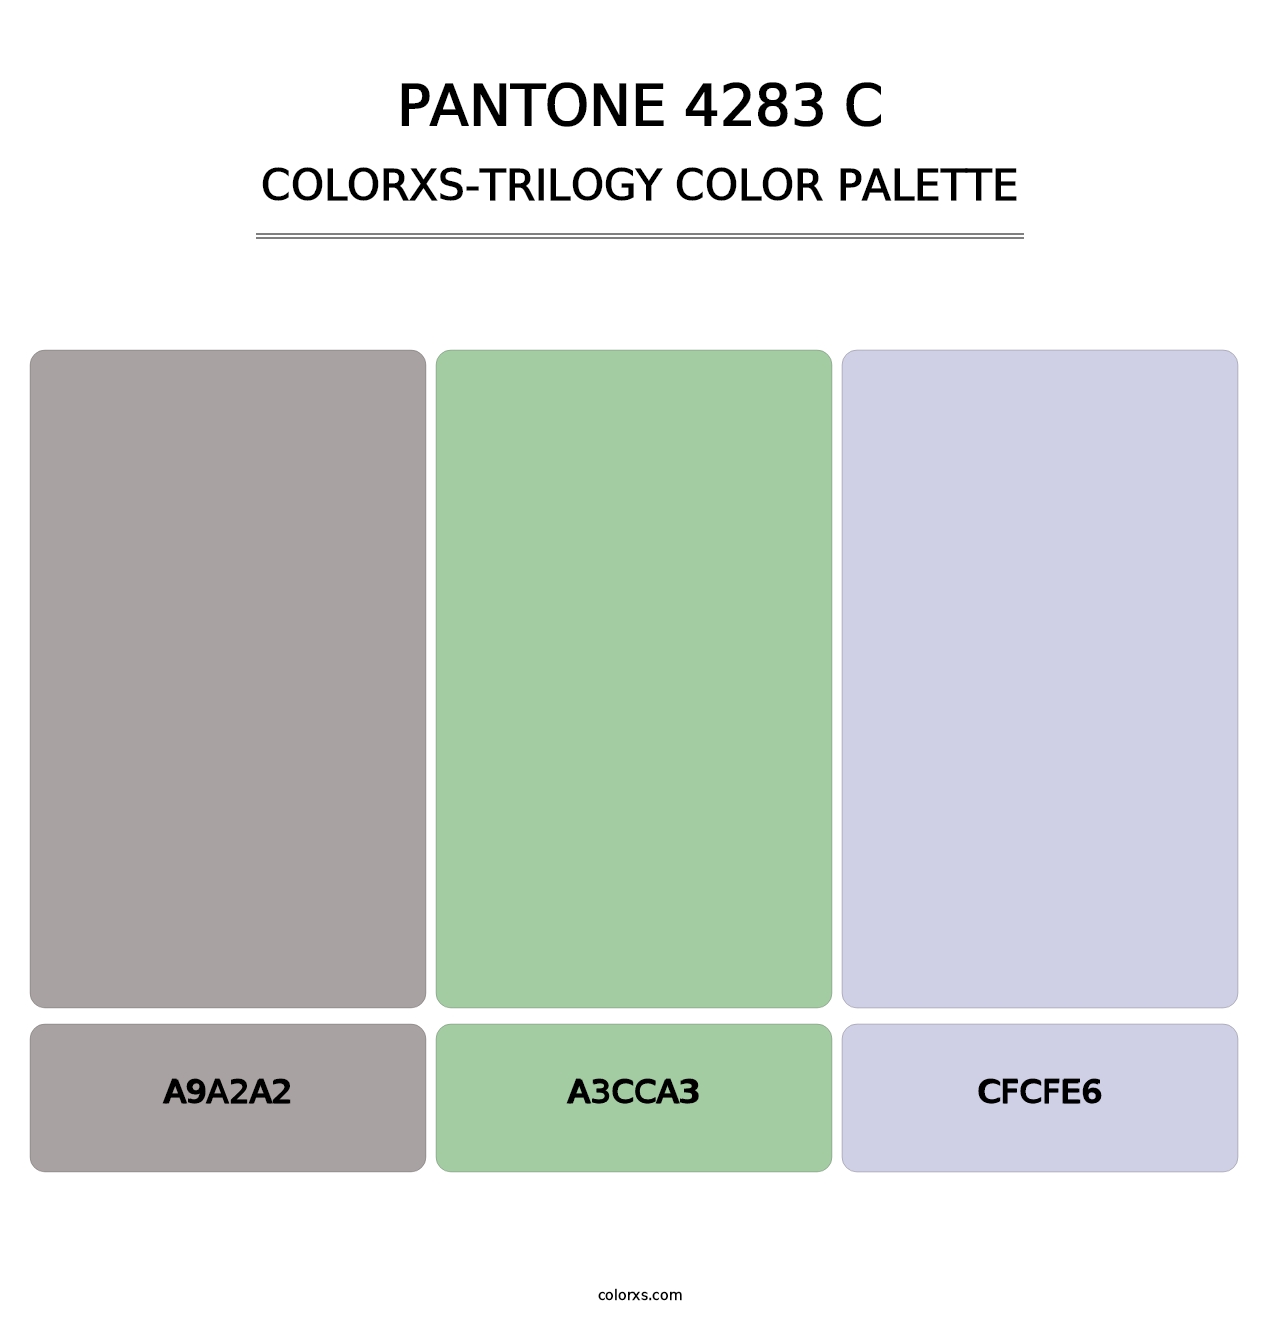 PANTONE 4283 C - Colorxs Trilogy Palette